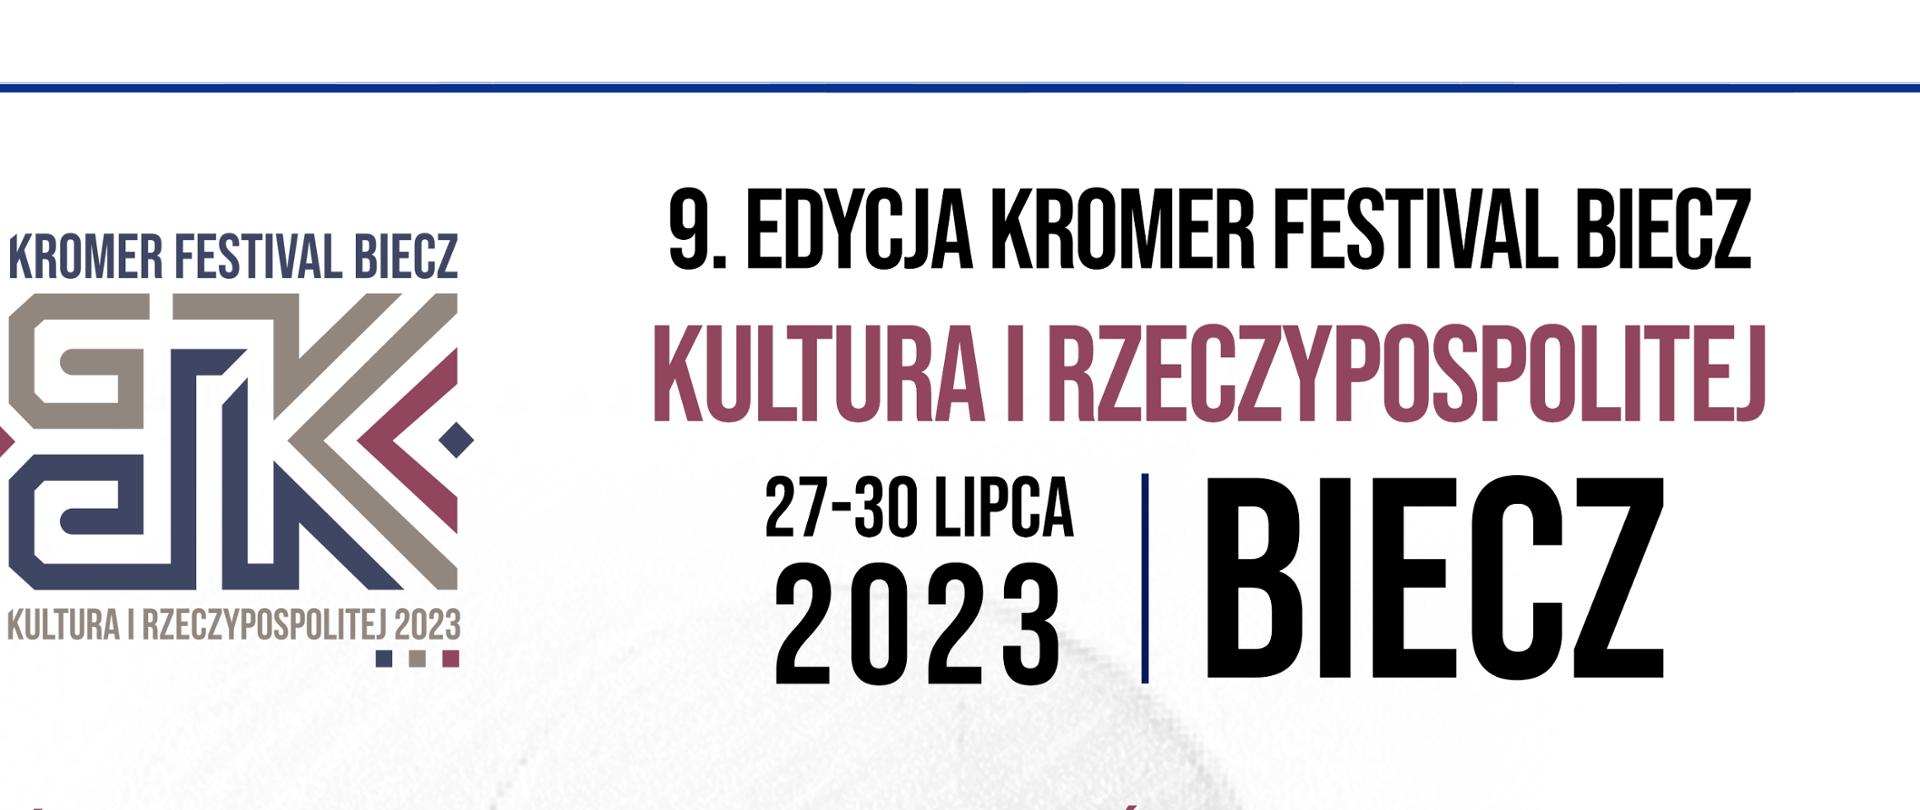 Kromer Festiwal